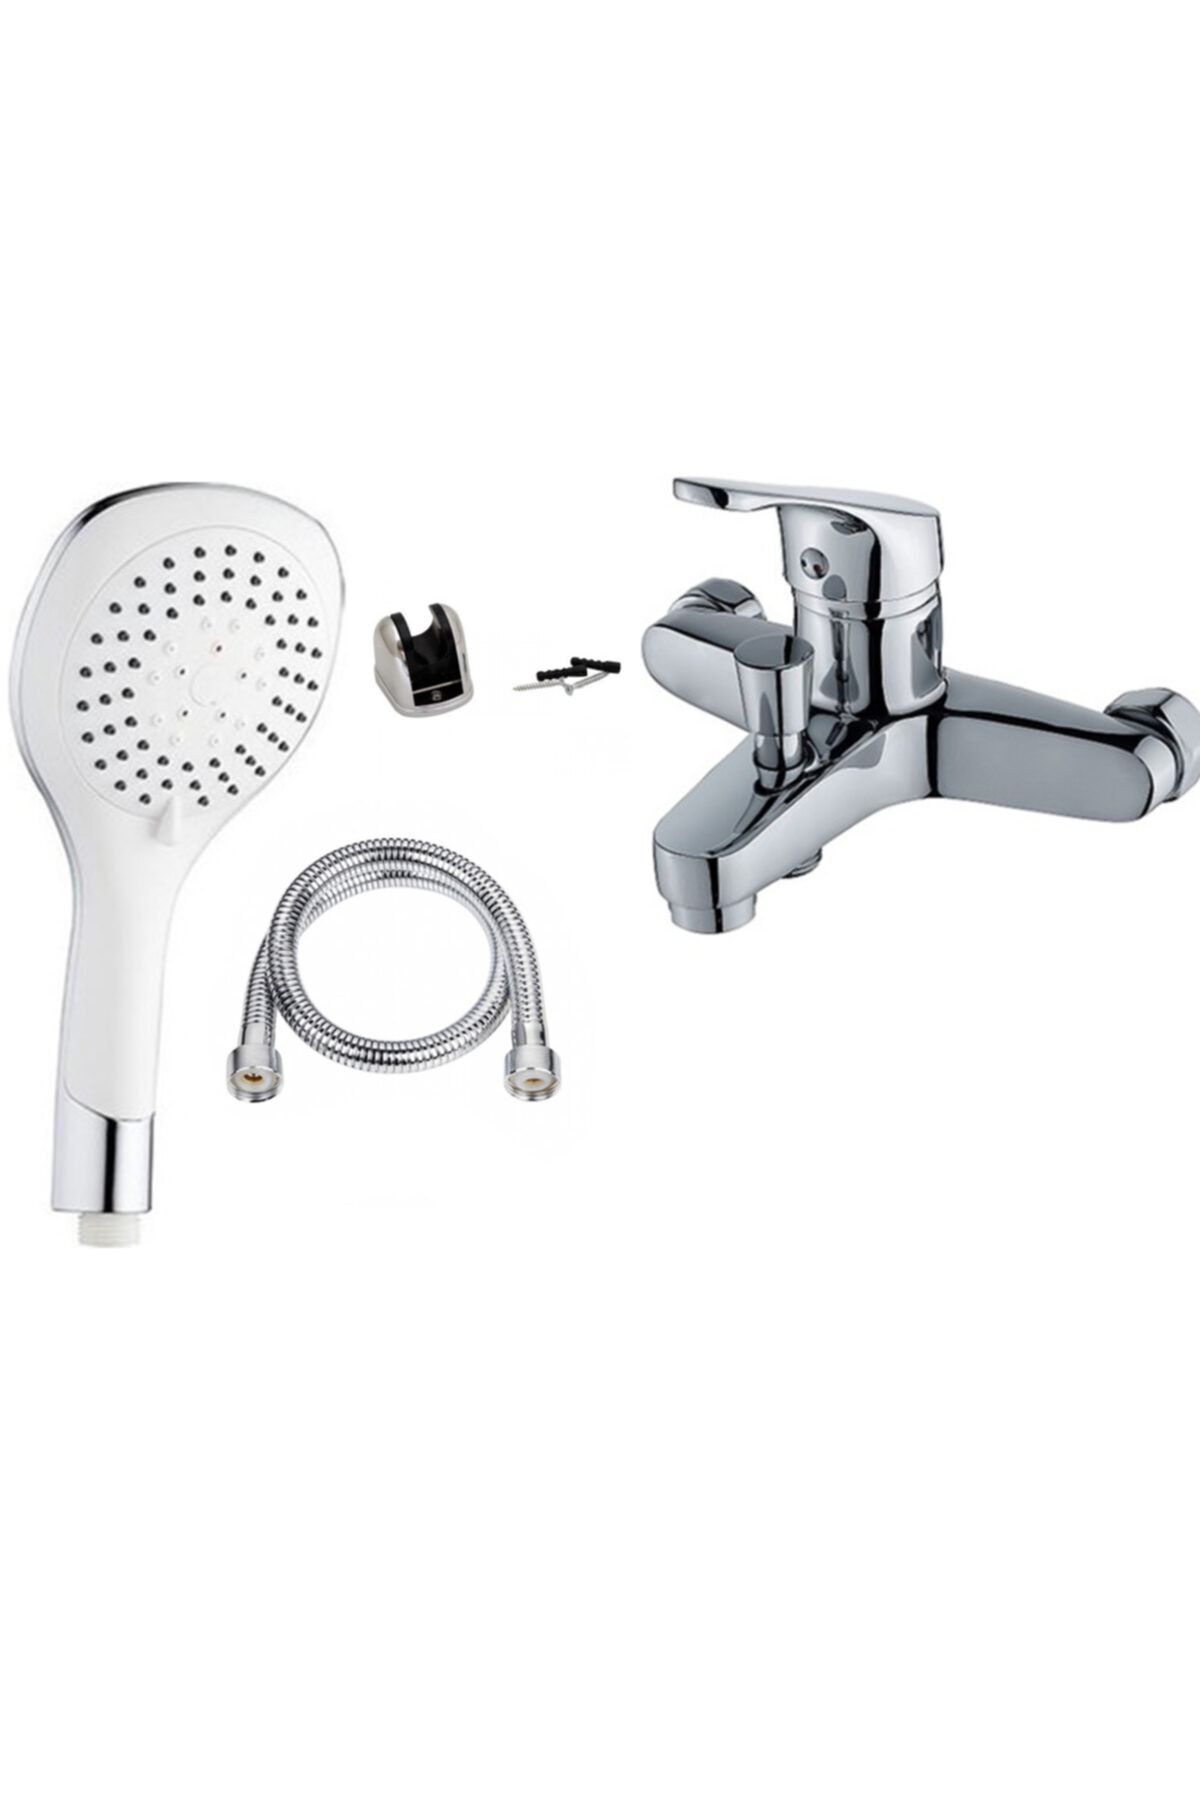 Irmak Banyo Bataryası Duş Seti Fonksiyonlu Duş Başlığı Batarya Seti / 5 Yıl Garantili